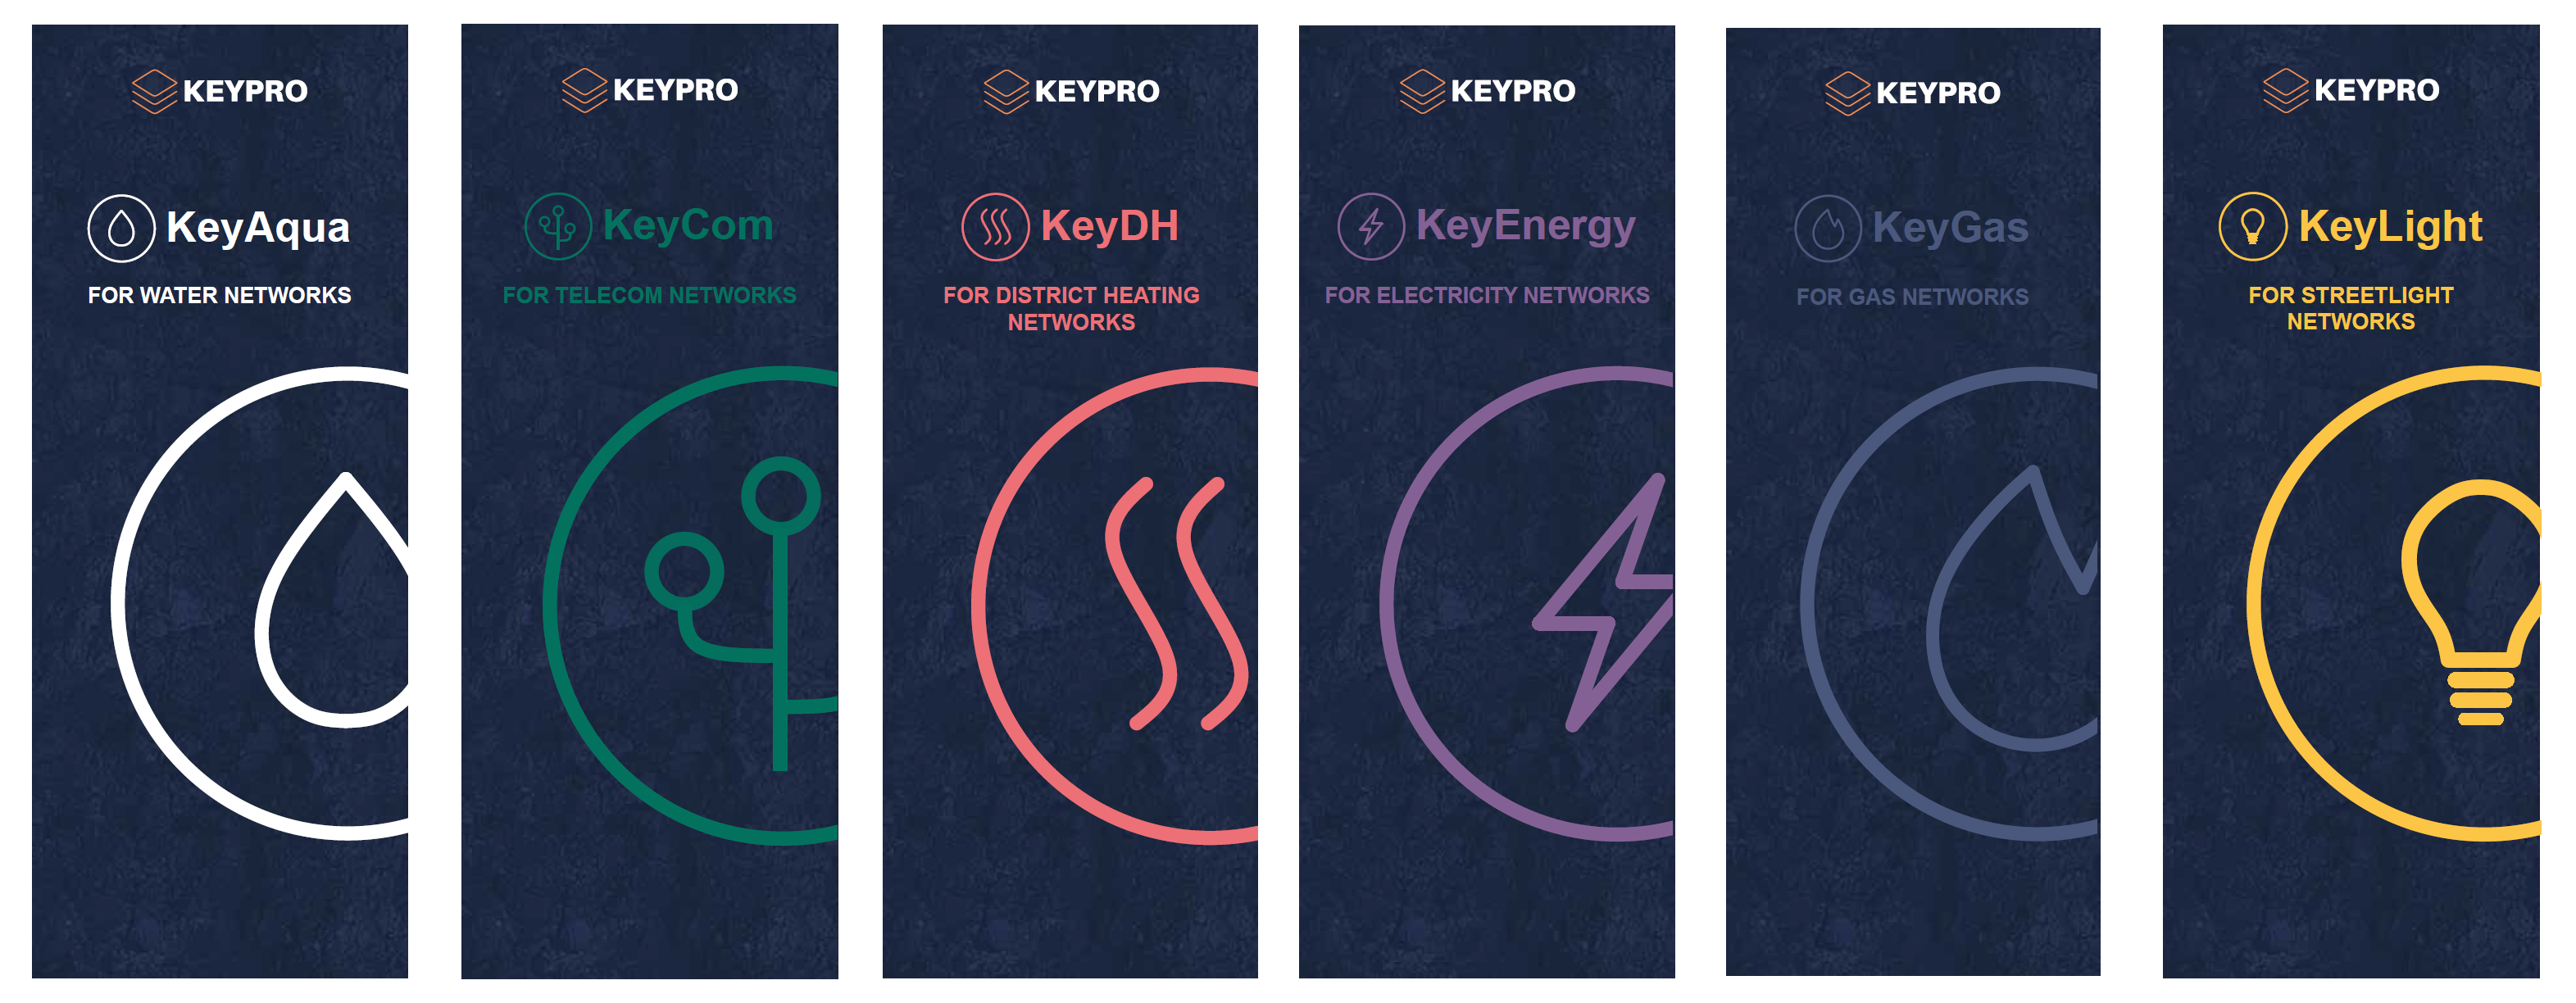 Keypro rollup product line EN